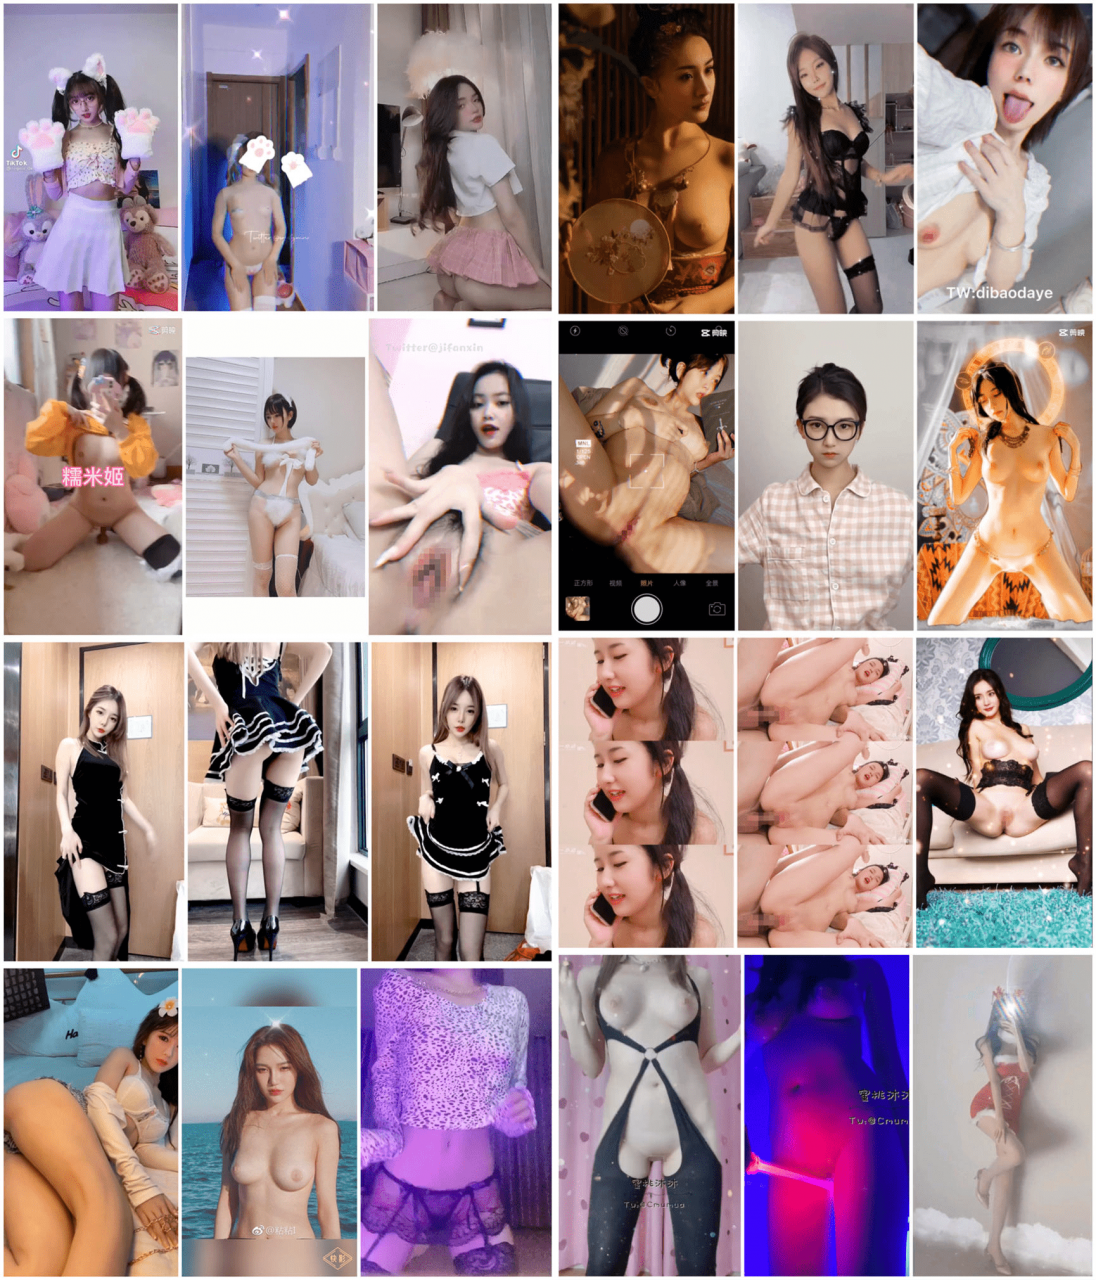 【抖音系列】抖音风格 裸舞 自拍 趣味短视频 397部合集